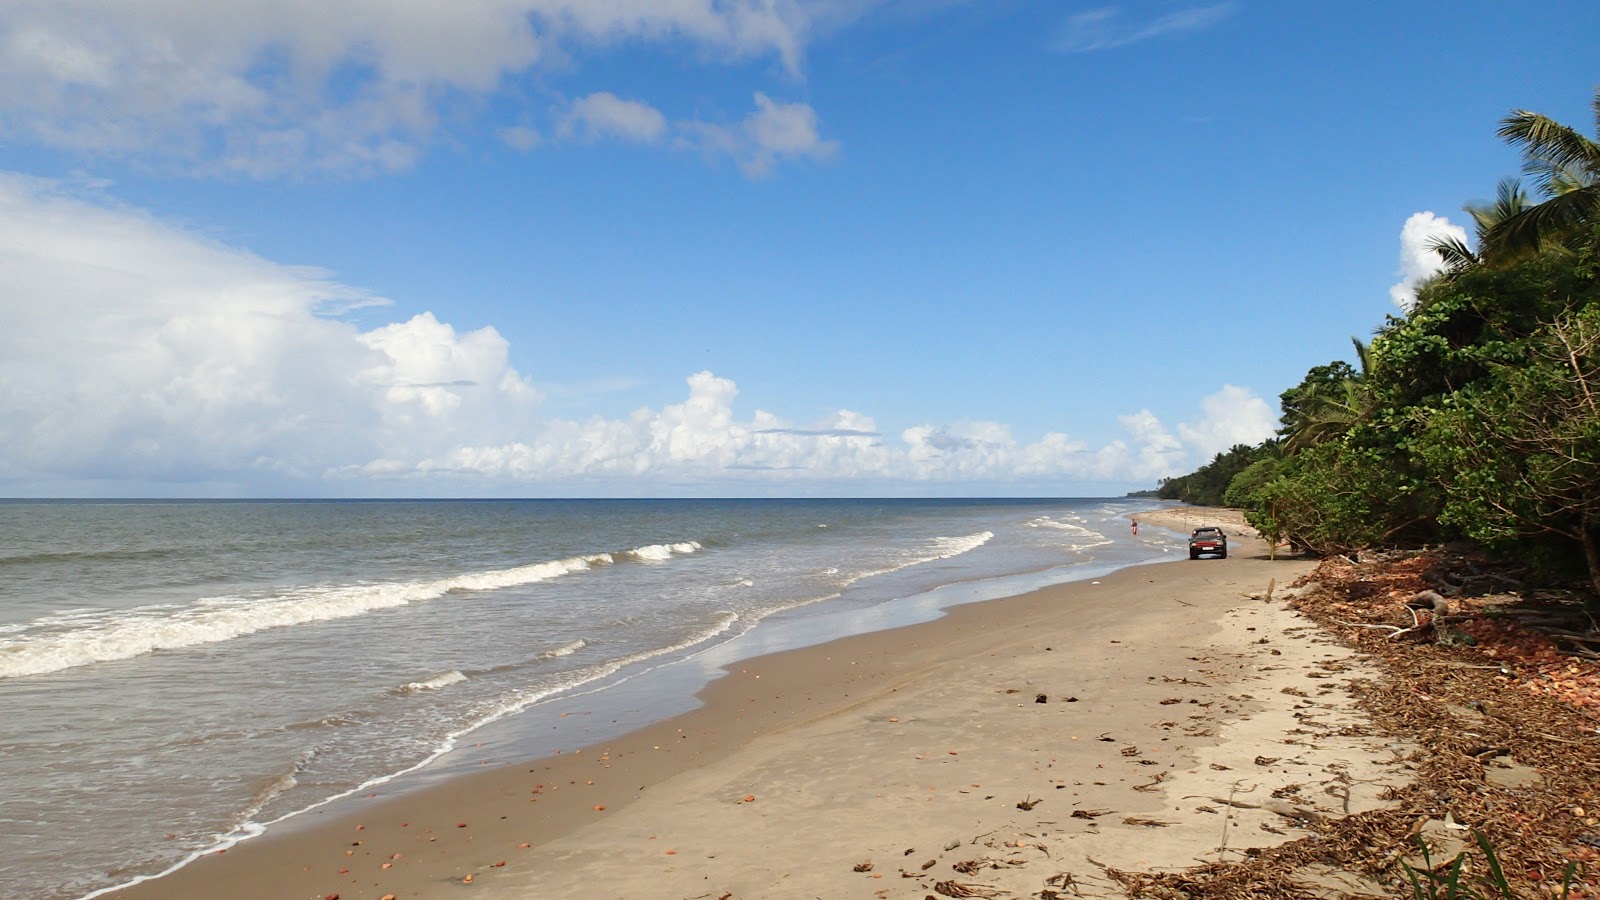 Zdjęcie Chatham beach z powierzchnią jasny piasek